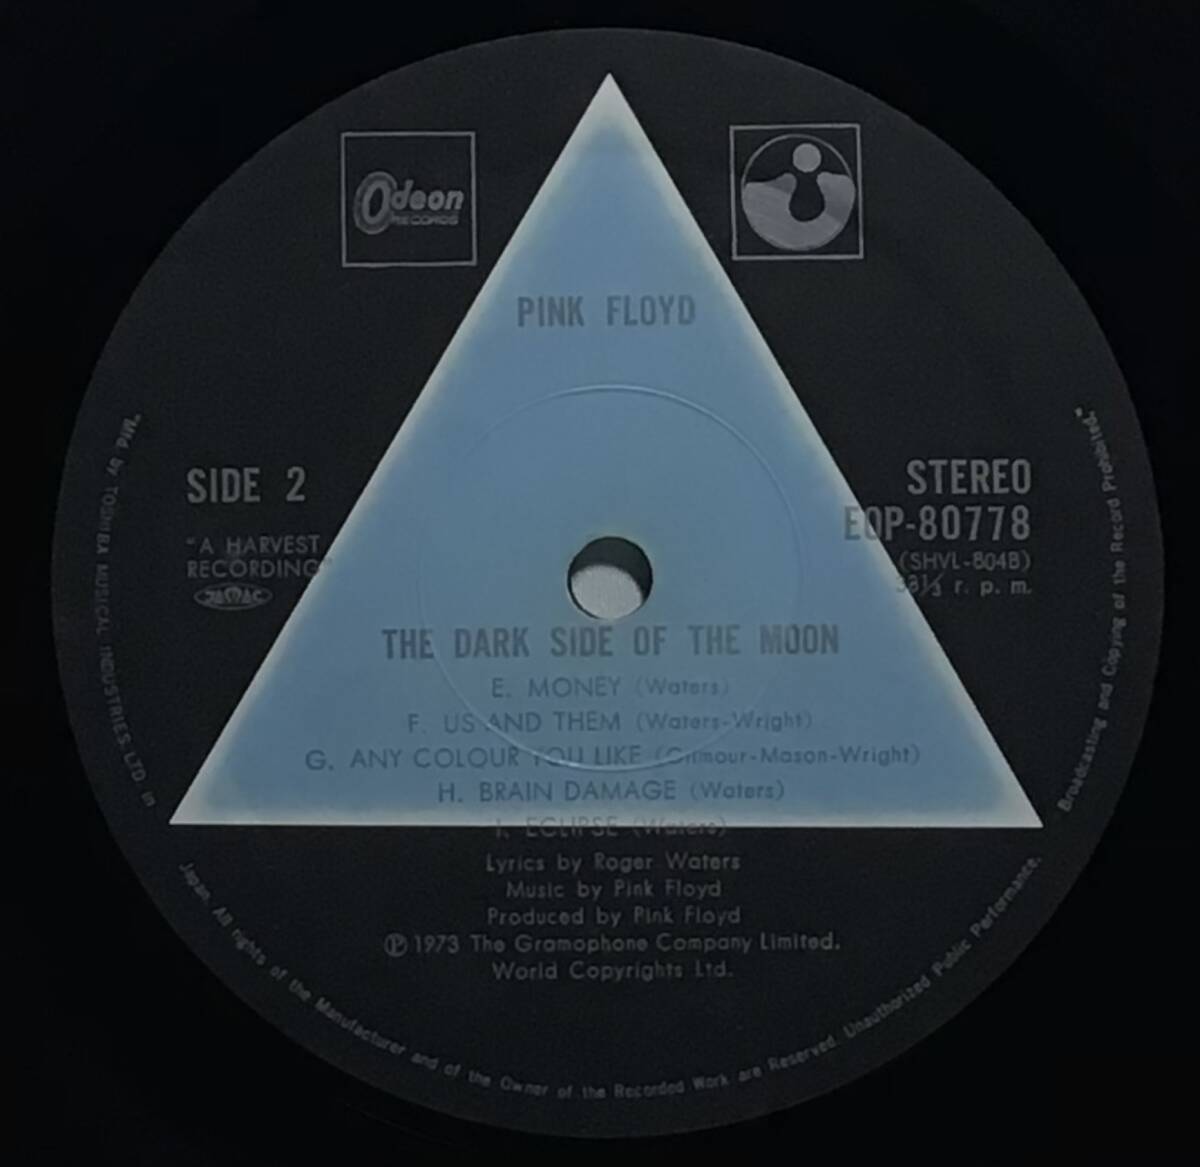 【日LP】 ピンクフロイド PINK FLOYD 狂気 THE DARK SIDE OF THE MOON ブックレット・カード付 1973 国内初版 青三角レーベル LPレコード_画像8